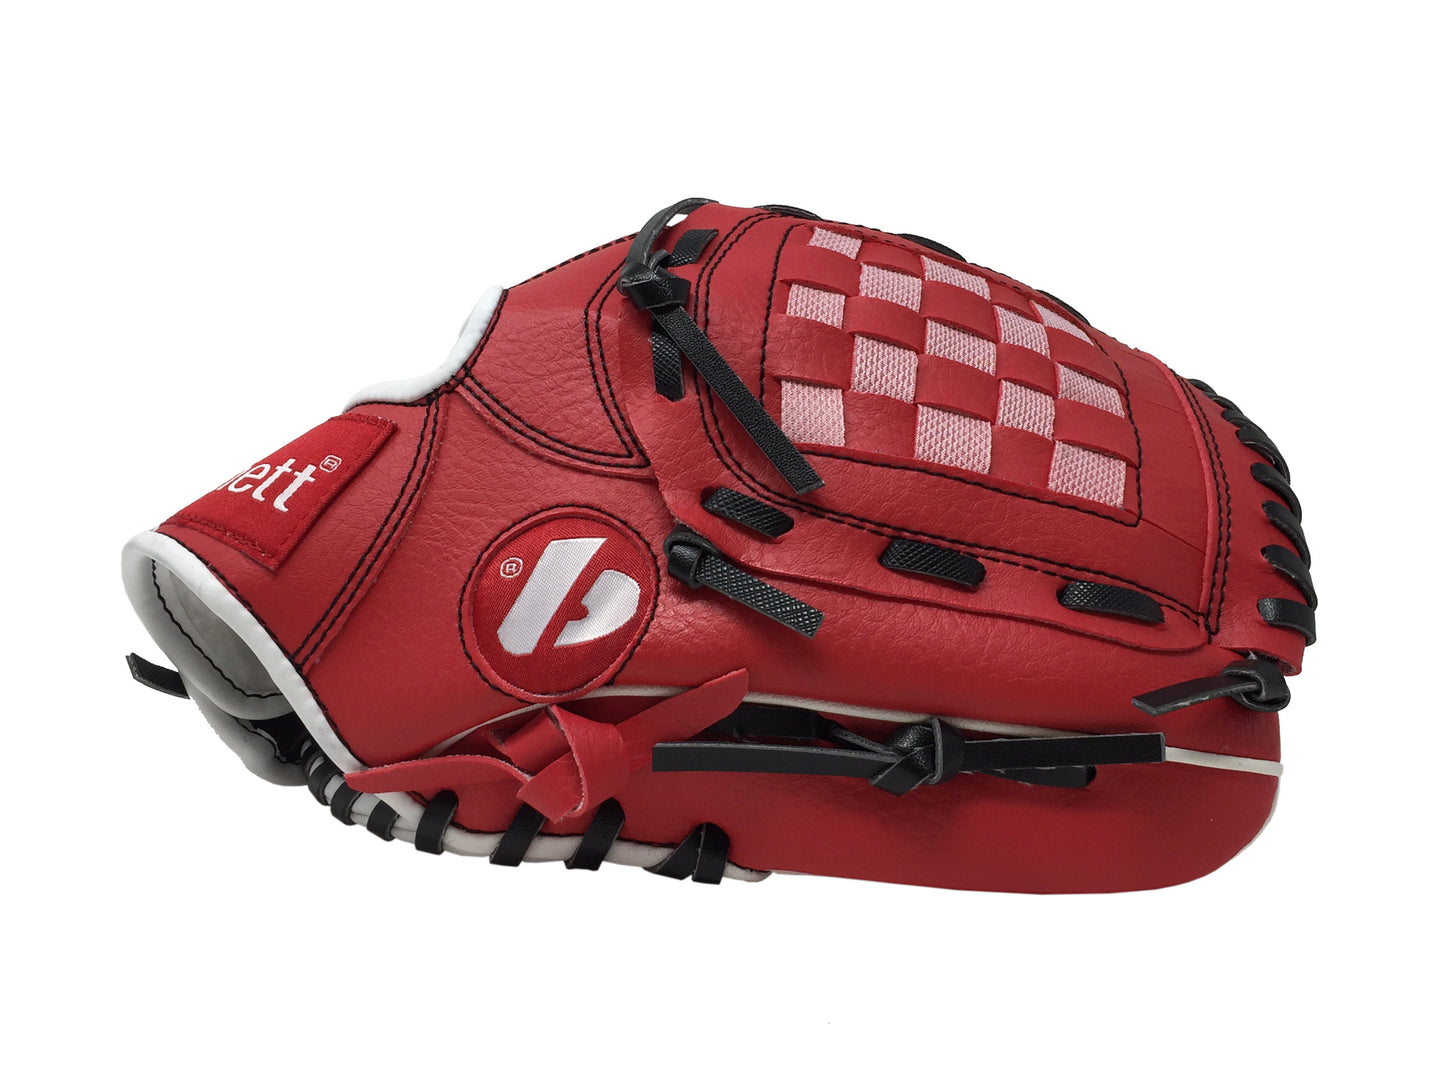 JL-105, Baseballová rukavice  outfield, velikost REG 10,5 " červená